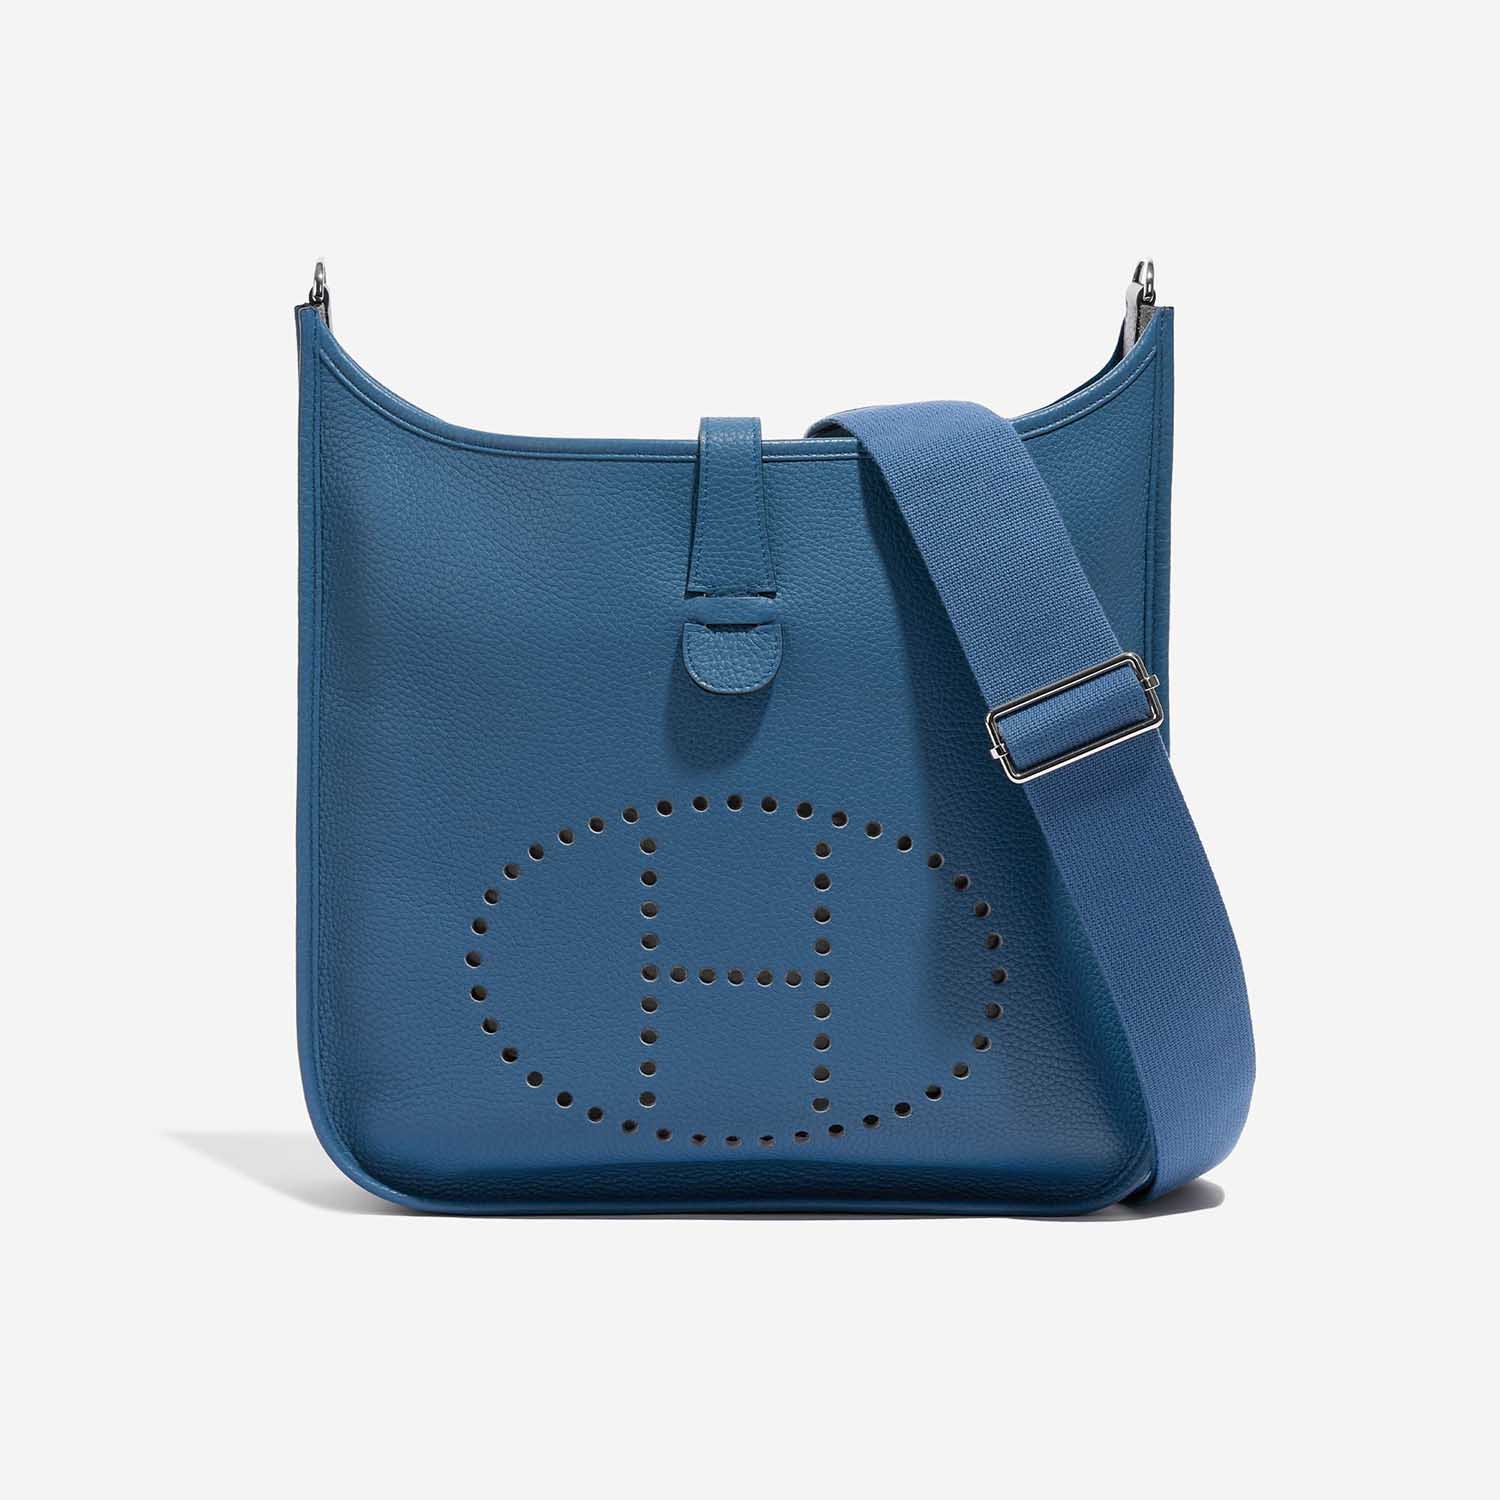 Pre-owned Hermès Tasche Evelyne 33 Clemence Bleu Agathe Blue Front | Verkaufen Sie Ihre Designer-Tasche auf Saclab.com